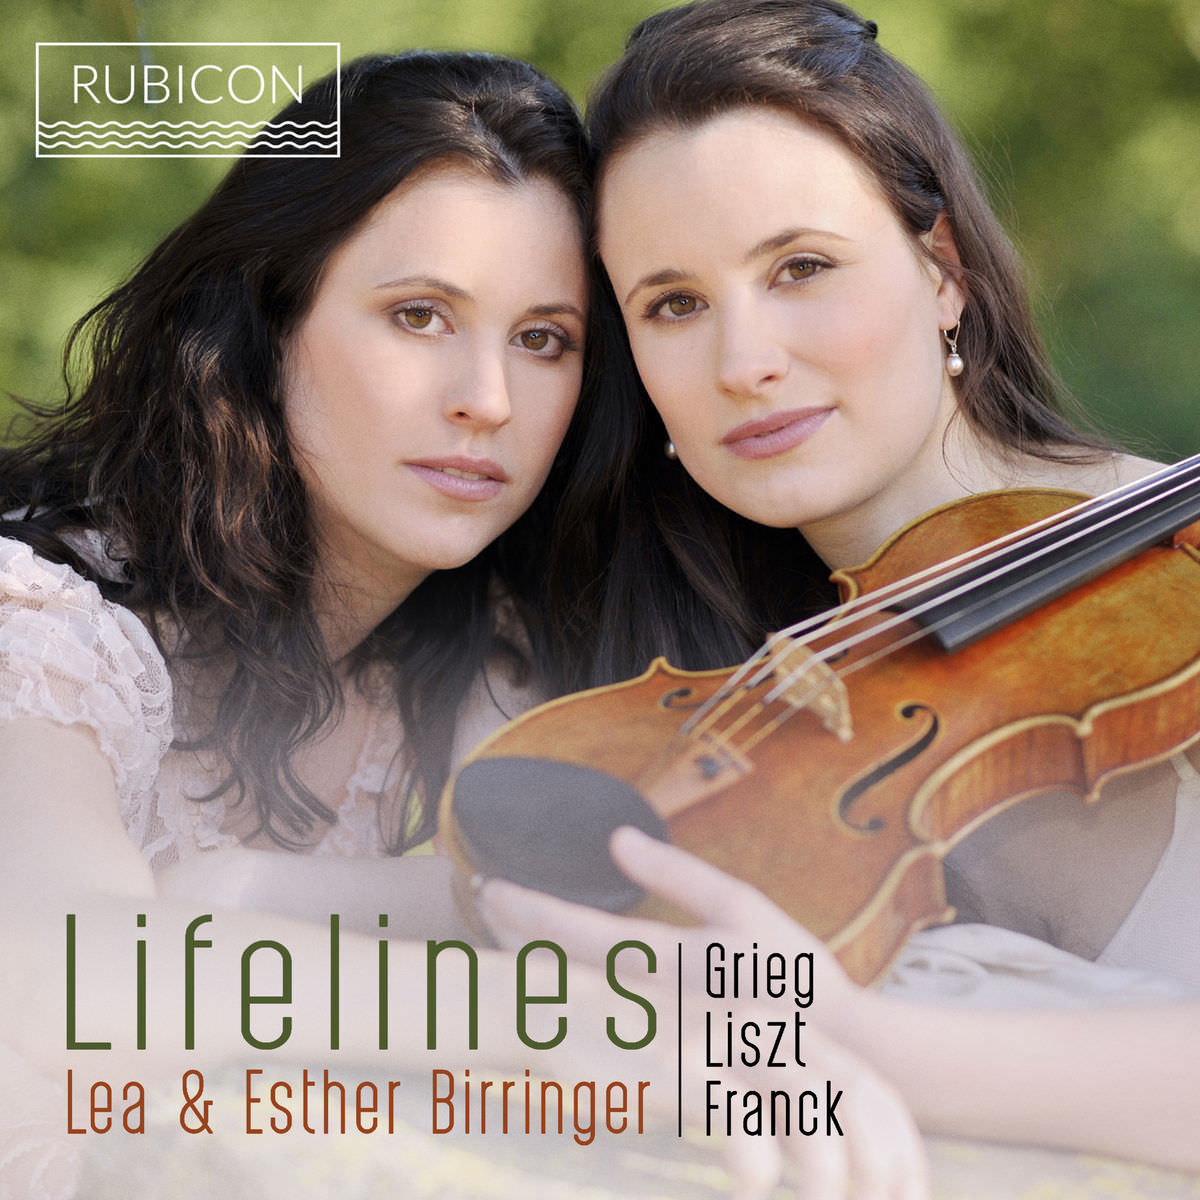 Lea Birringer & Esther Birringer - Grieg, Liszt & Franck: Lifelines (2018) [FLAC 24bit/48kHz]